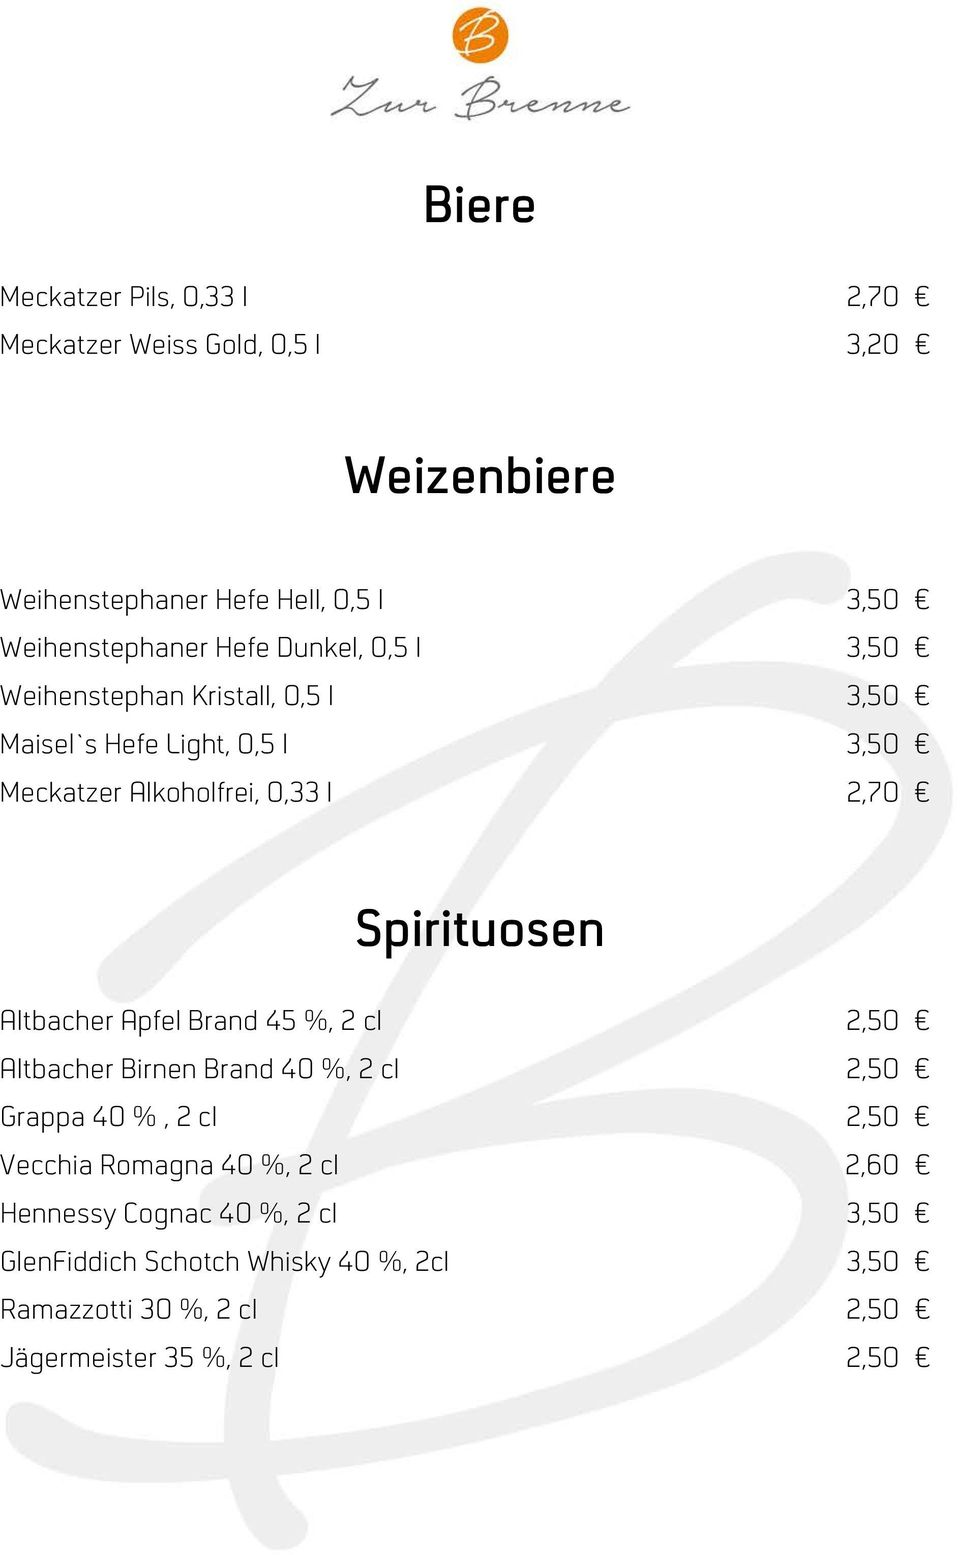 Spirituosen Altbacher Apfel Brand 45 %, 2 cl 2,50 Altbacher Birnen Brand 40 %, 2 cl 2,50 Grappa 40 %, 2 cl 2,50 Vecchia Romagna 40